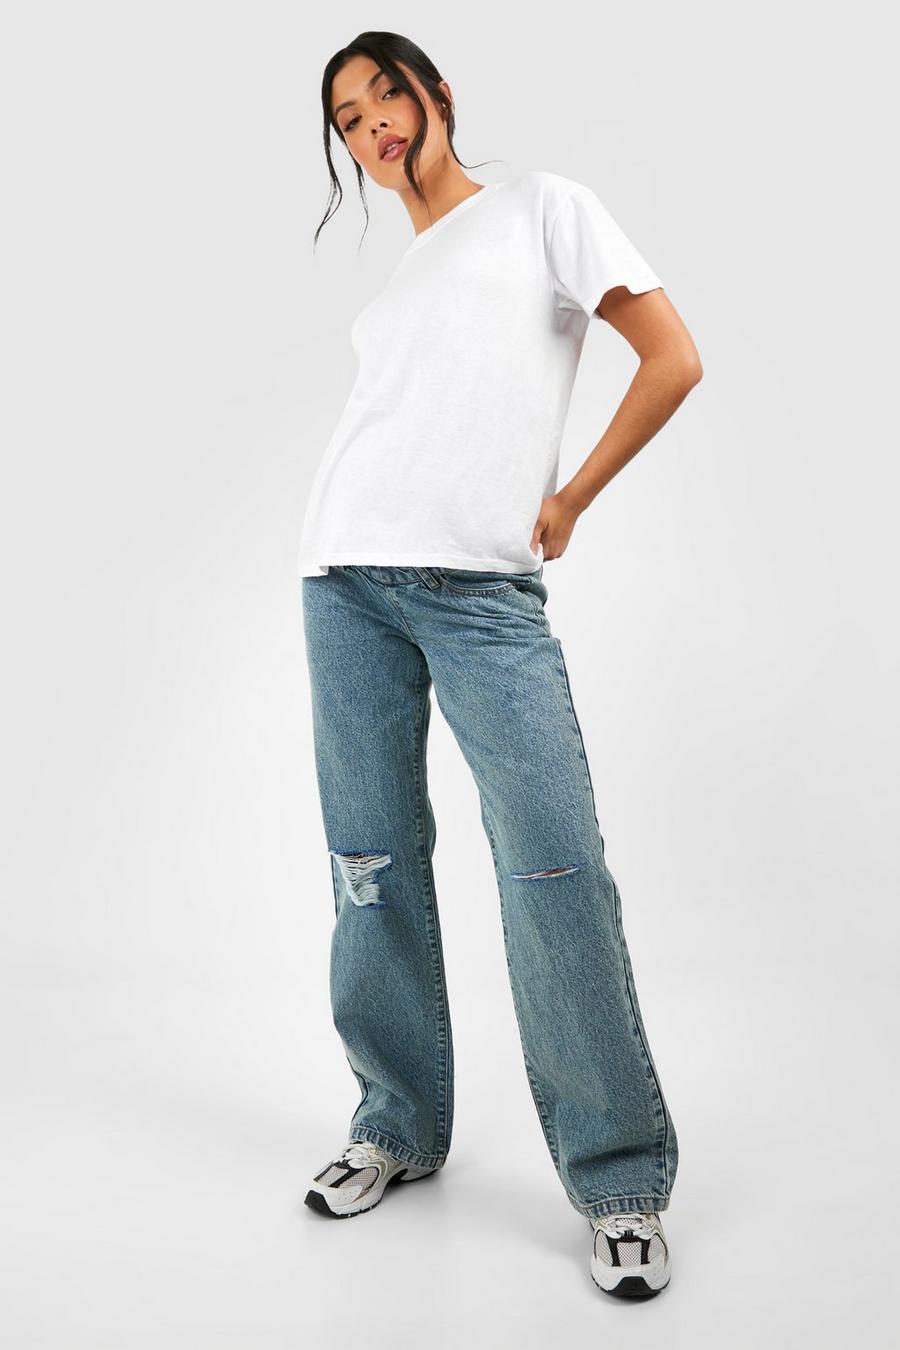 Jeans Premaman in taglio maschile strappati a vita alta, Vintage wash